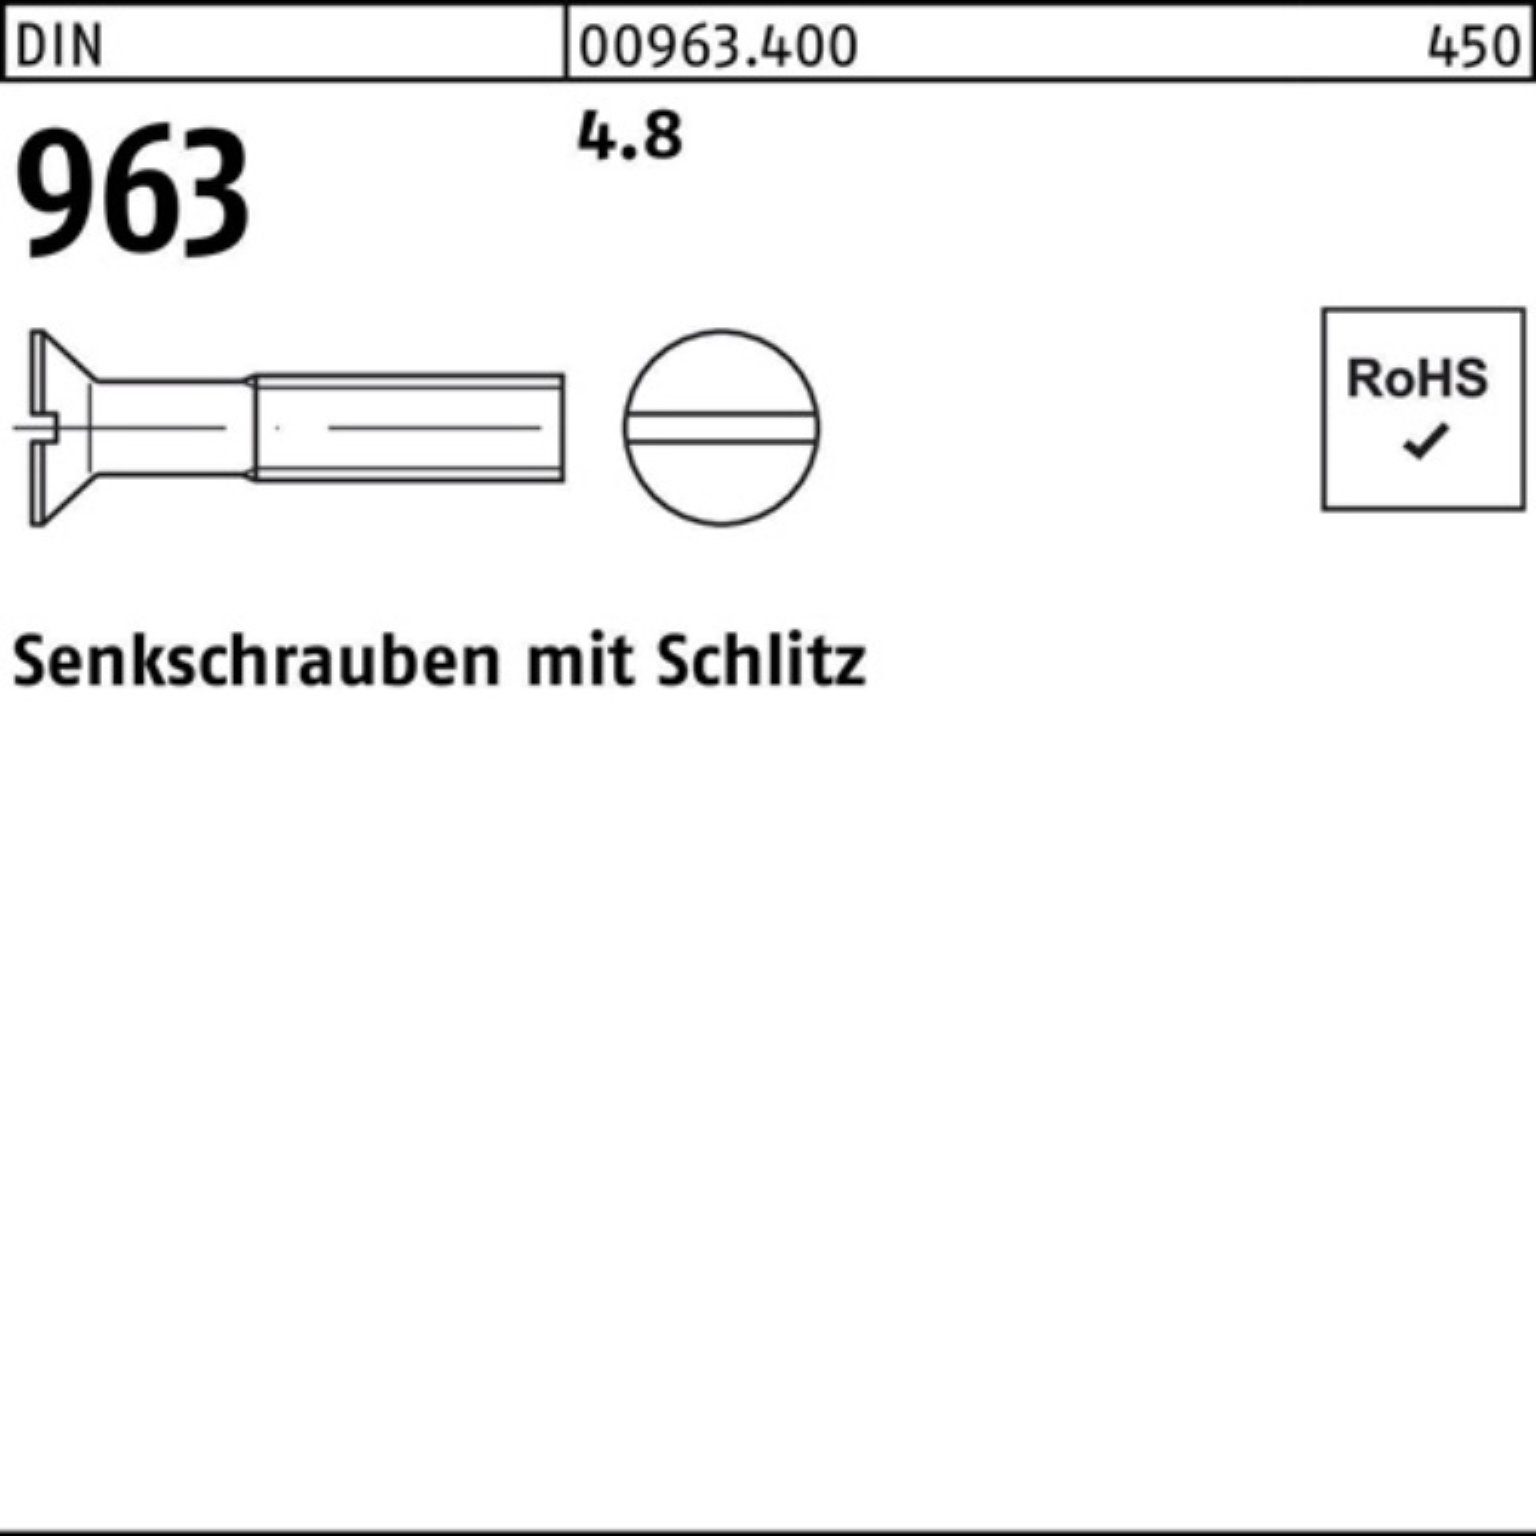 20 M6x Stück 1000 Senkschraube Reyher 4.8 Pack DIN 1000er 963 96 DIN Senkschraube Schlitz